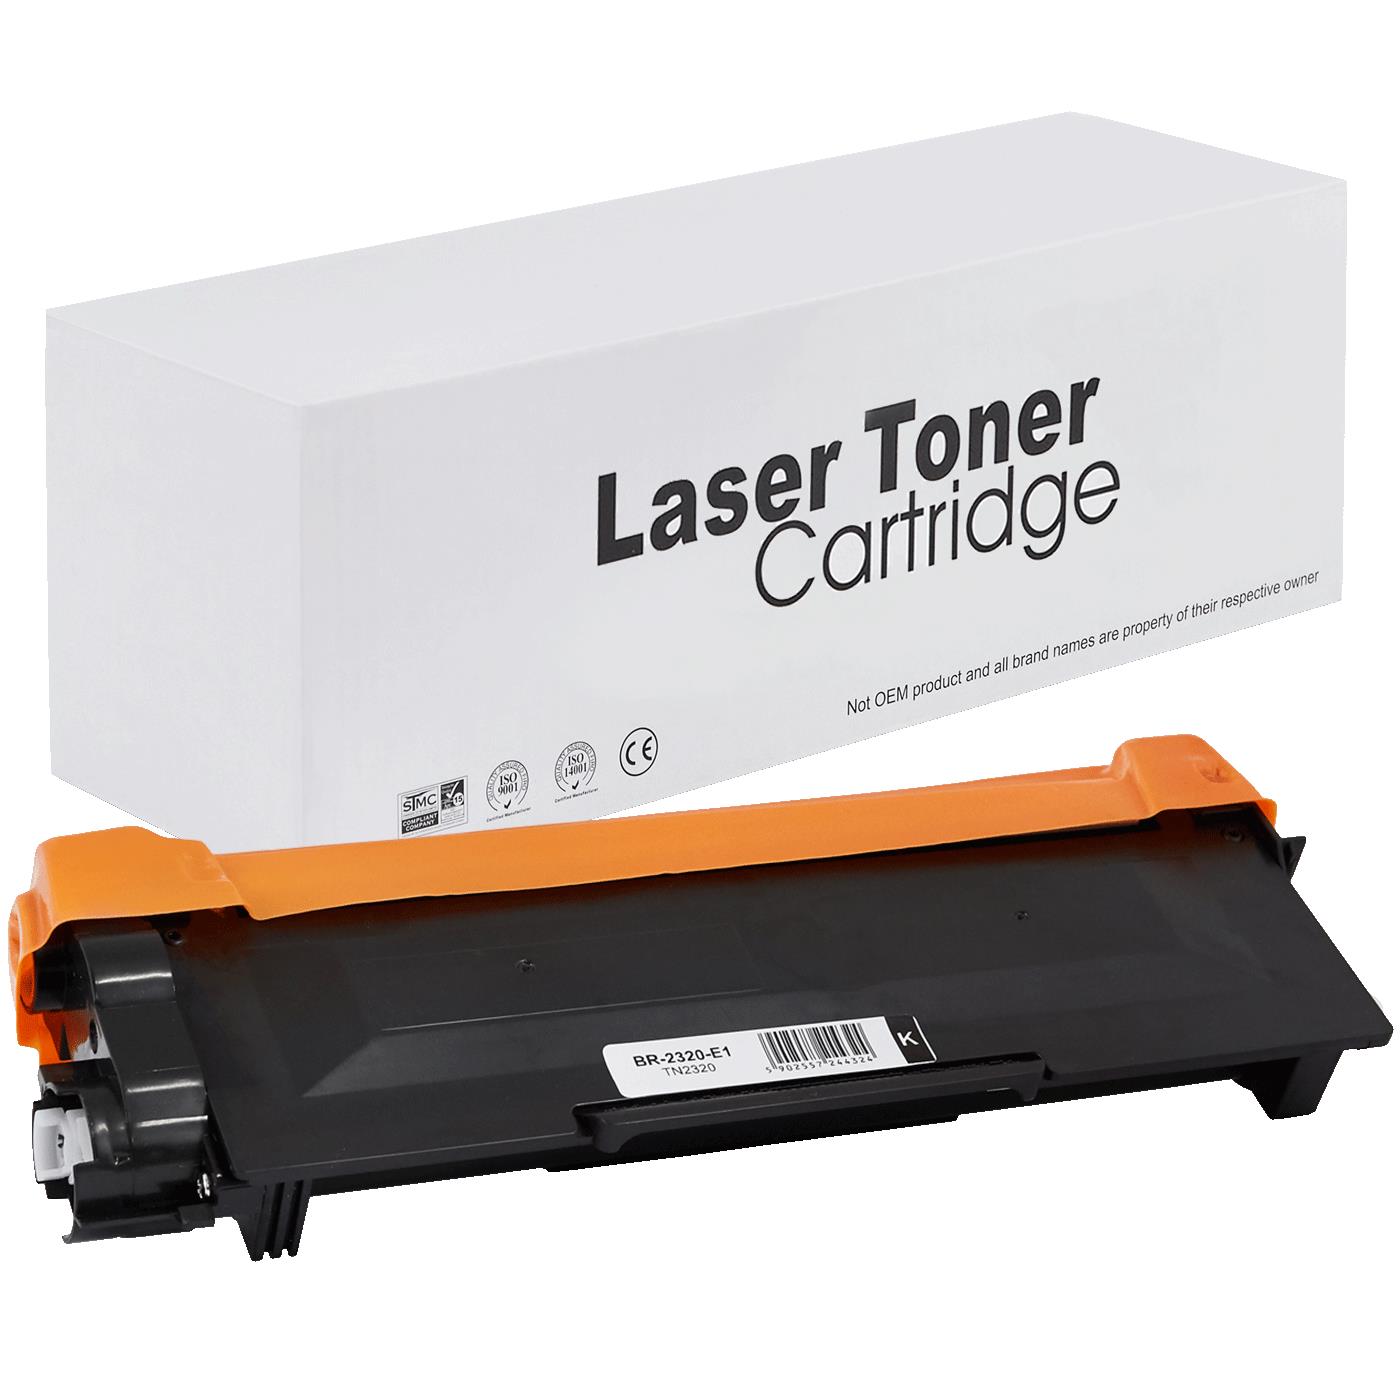 съвместима тонер касета за принтери и печатащи устройства на Brother DCP-L 2560 DW Toner BR-2320 | TN2320 / TN2310 / TN-2320. Ниски цени, прецизно изпълнение, високо качество.